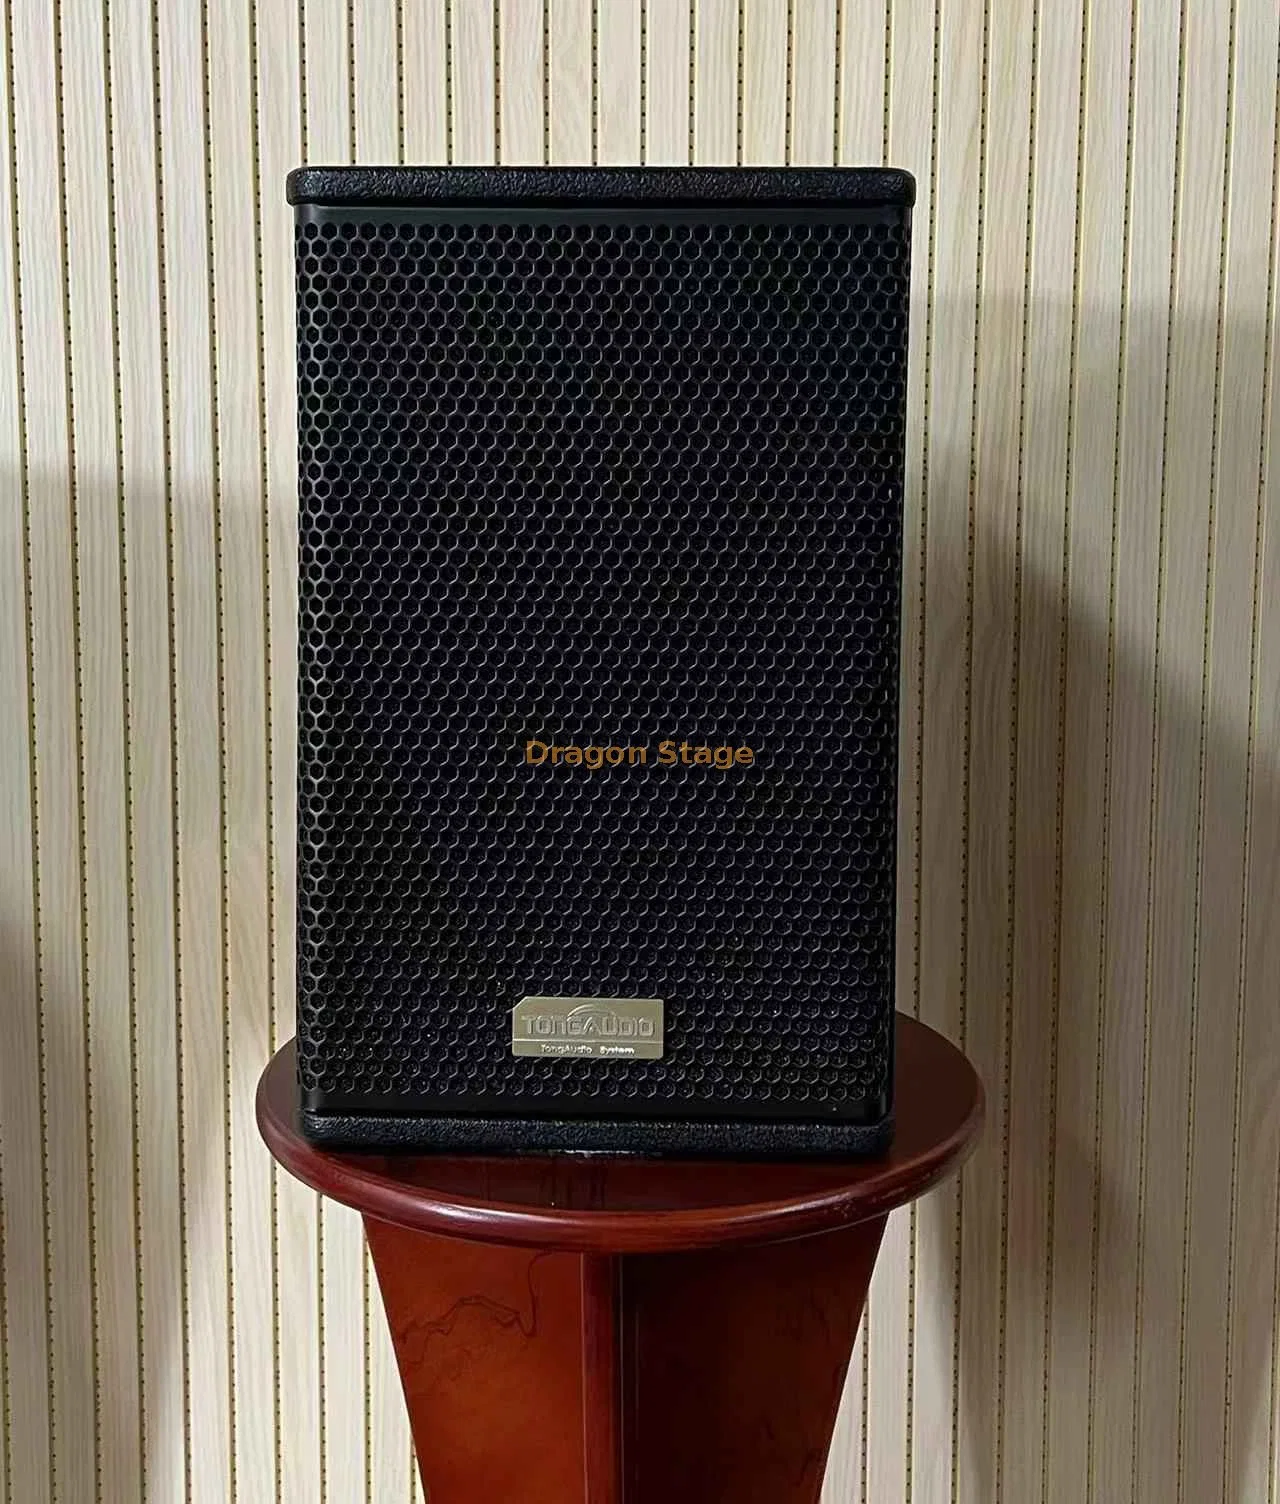 Dragonstage Lautsprecher 6,5 Zoll ADAM Audio Novation Bass DJ PA System Professional Subwoofer Sound Tower Home Entertainment-Lautsprecher Für Den Außenbereich